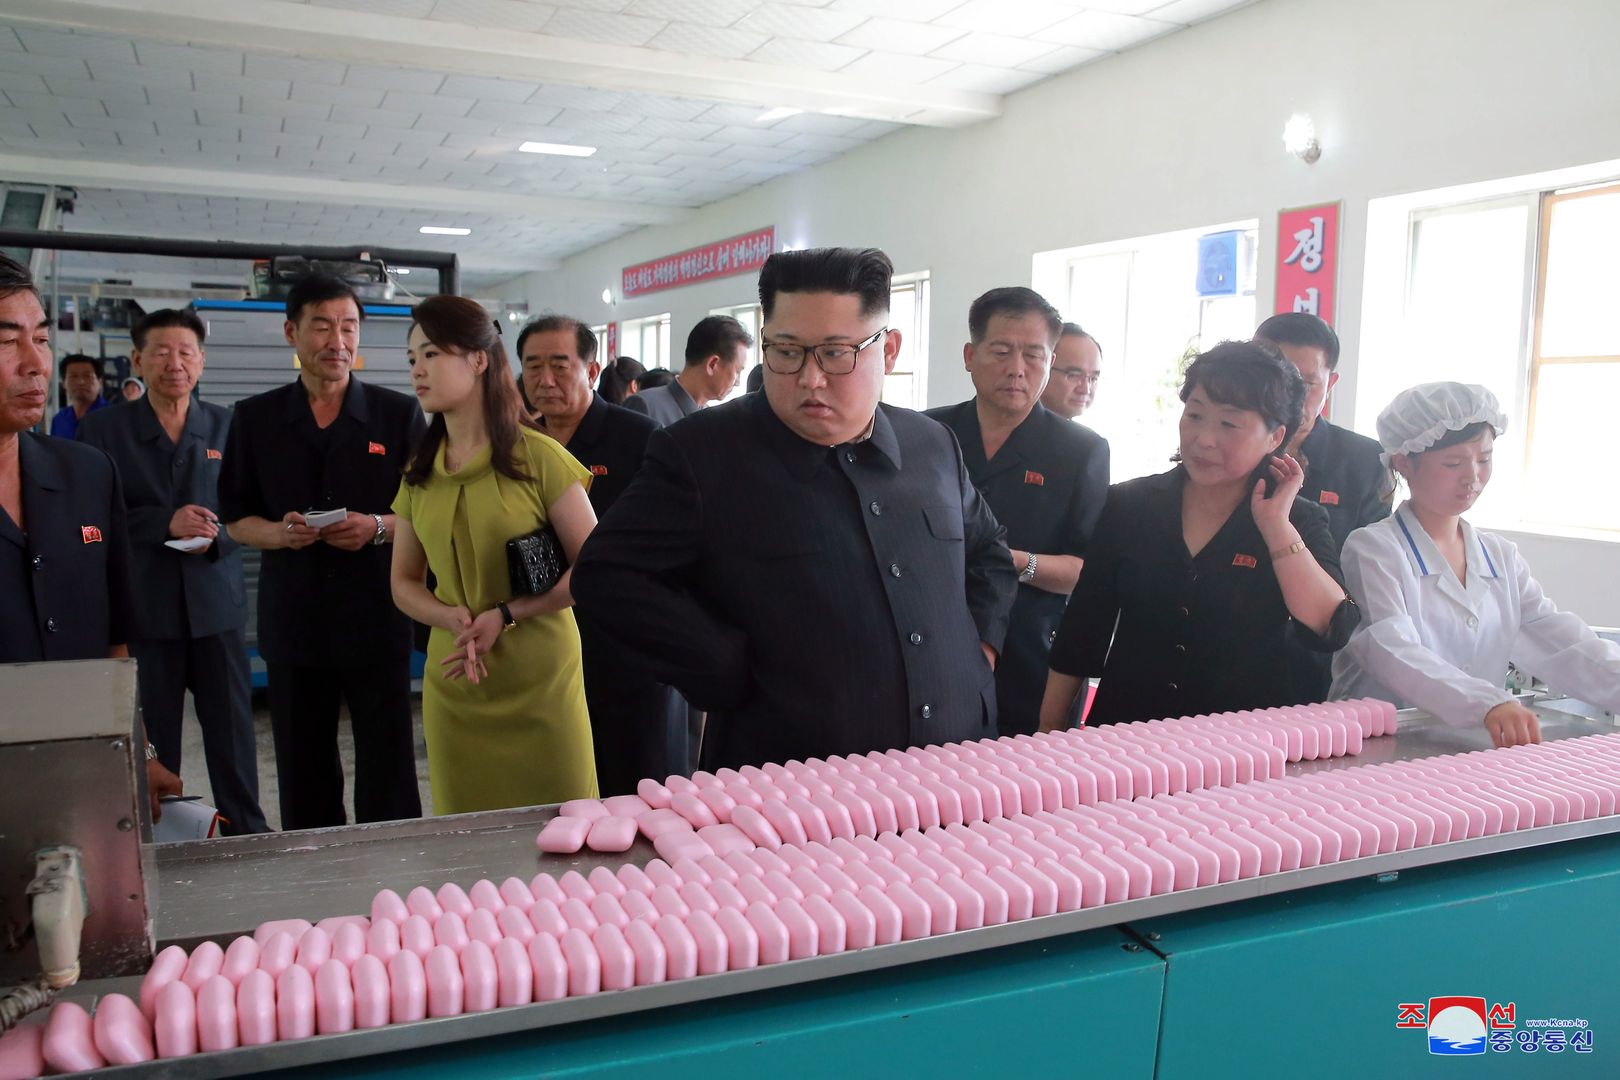 Pokazali brudnego Kim Dzong Una. Wielka zmiana w Korei Północnej